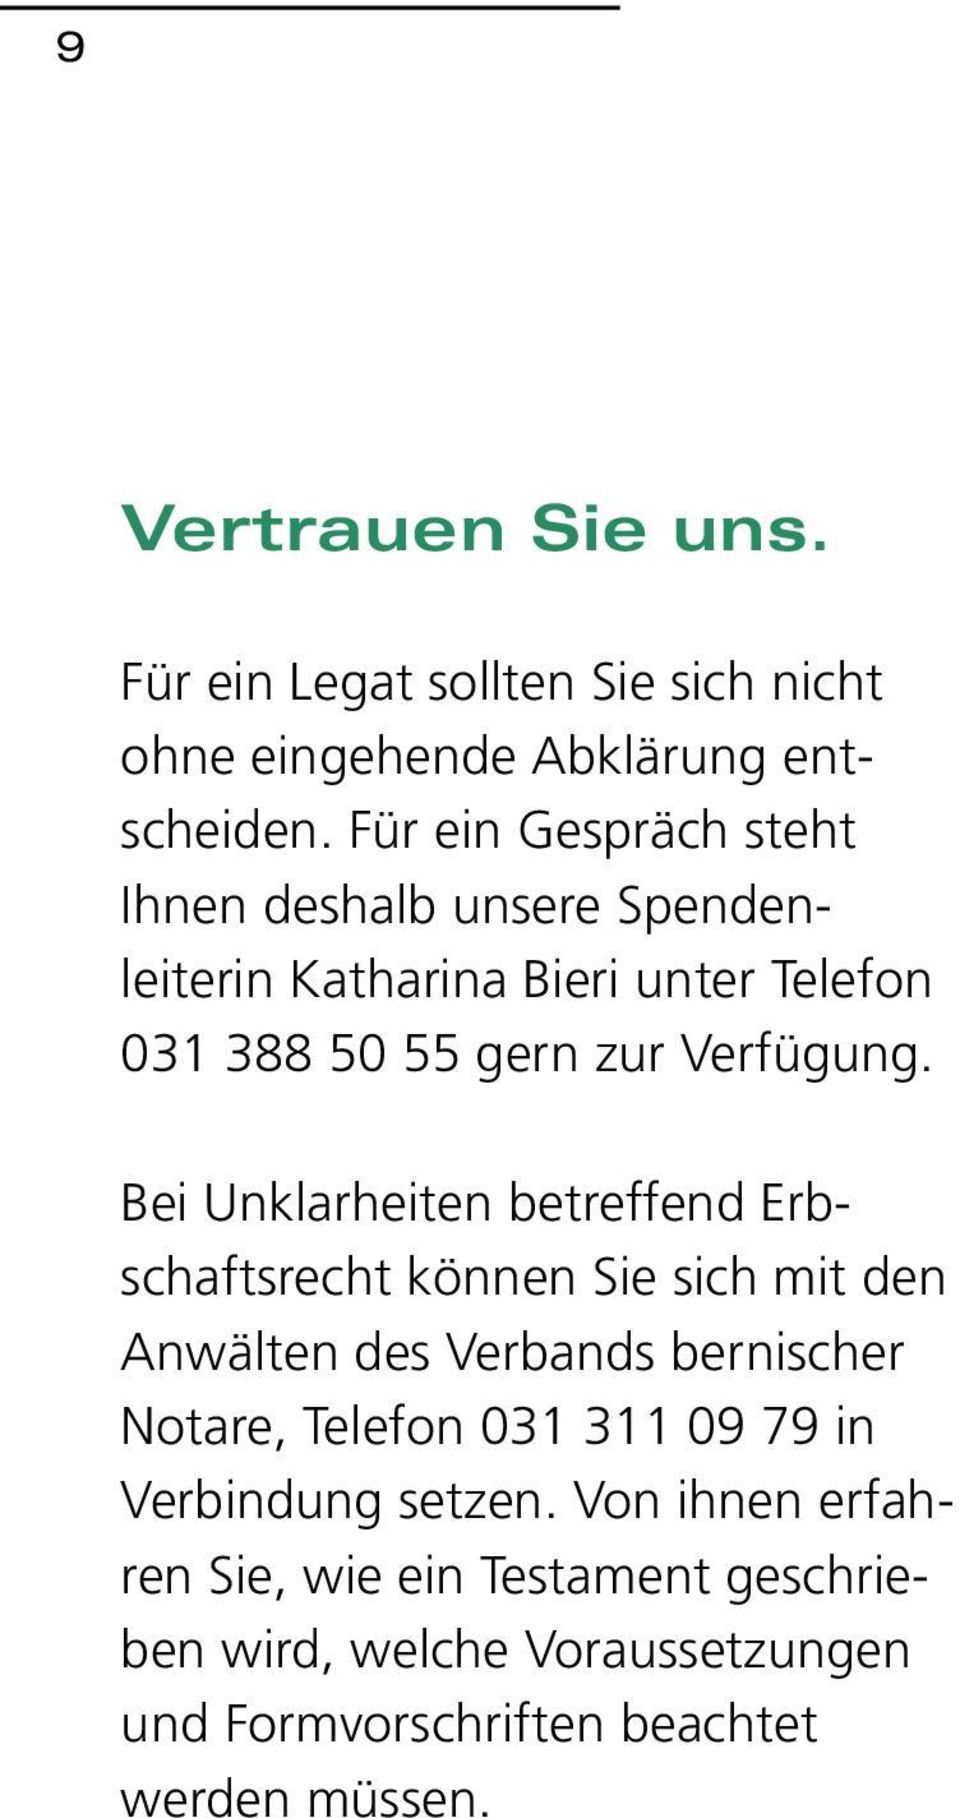 Bei Unklarheiten betreffend Erbschaftsrecht können Sie sich mit den Anwälten des Verbands bernischer Notare, Telefon 031 311